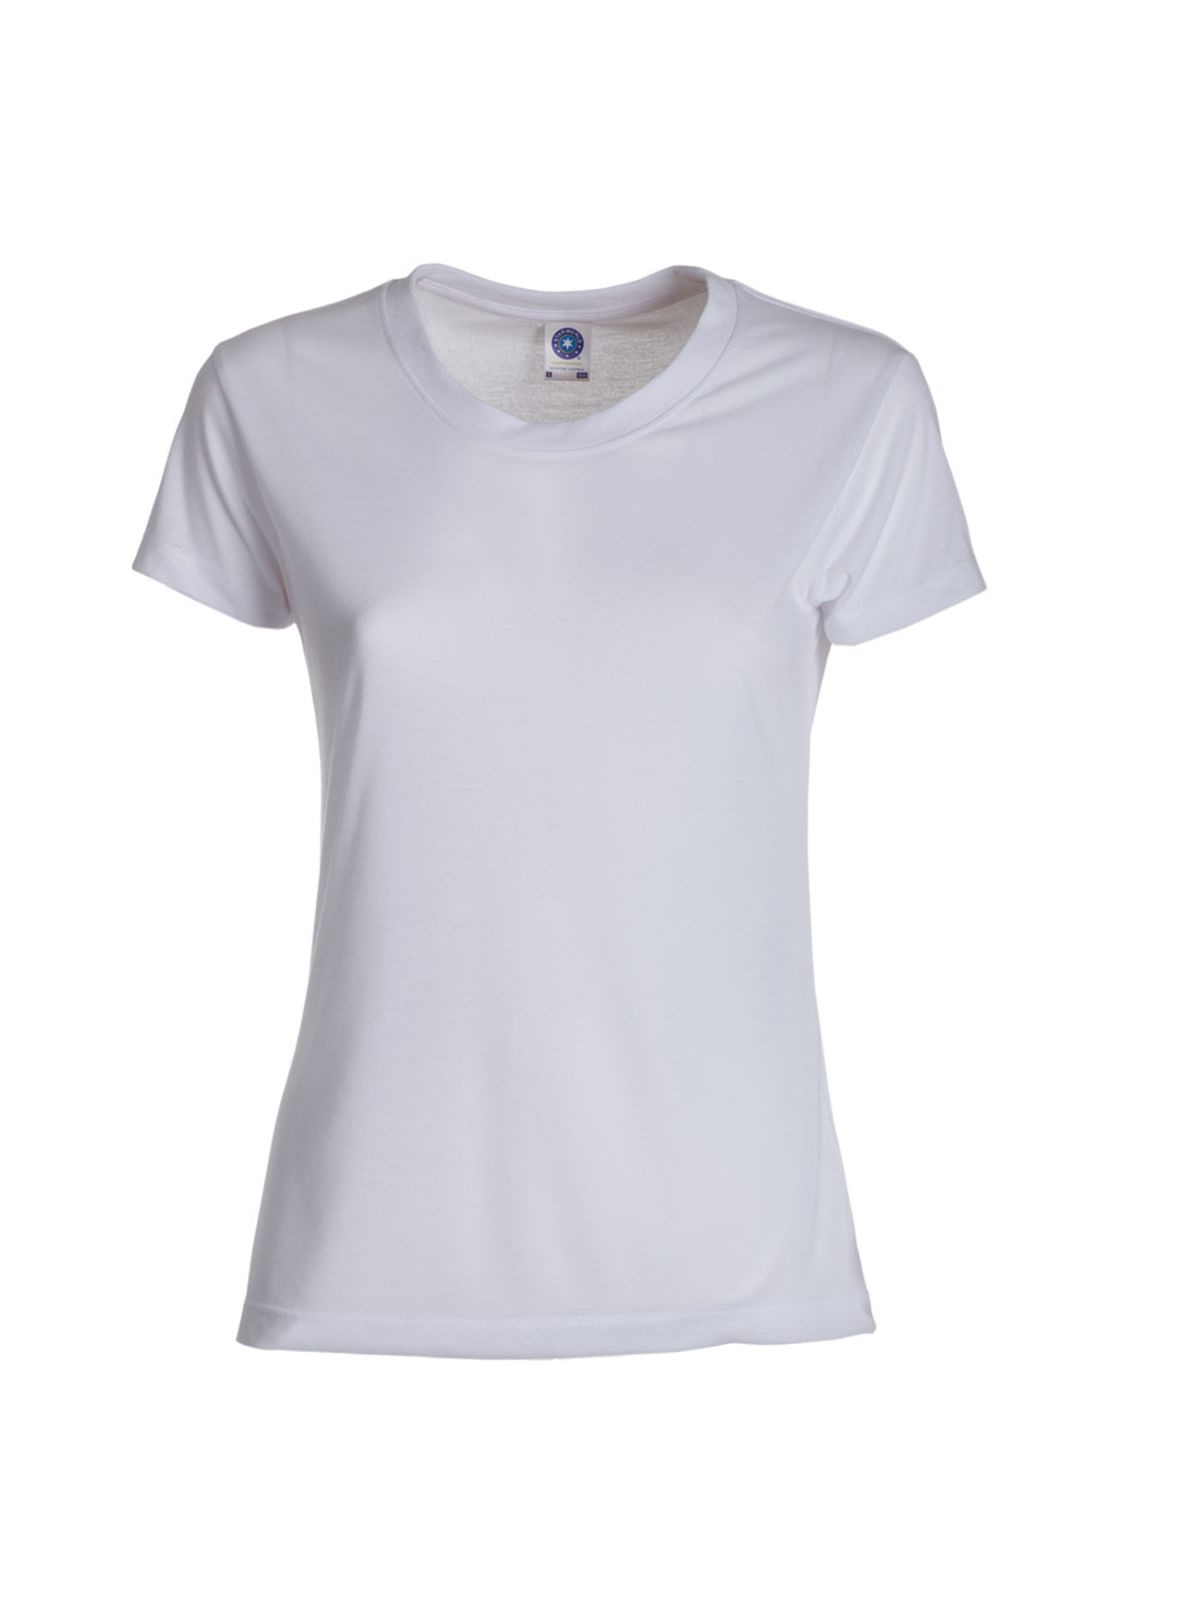 gold-label-ladies-retail-t-shirt-white.webp